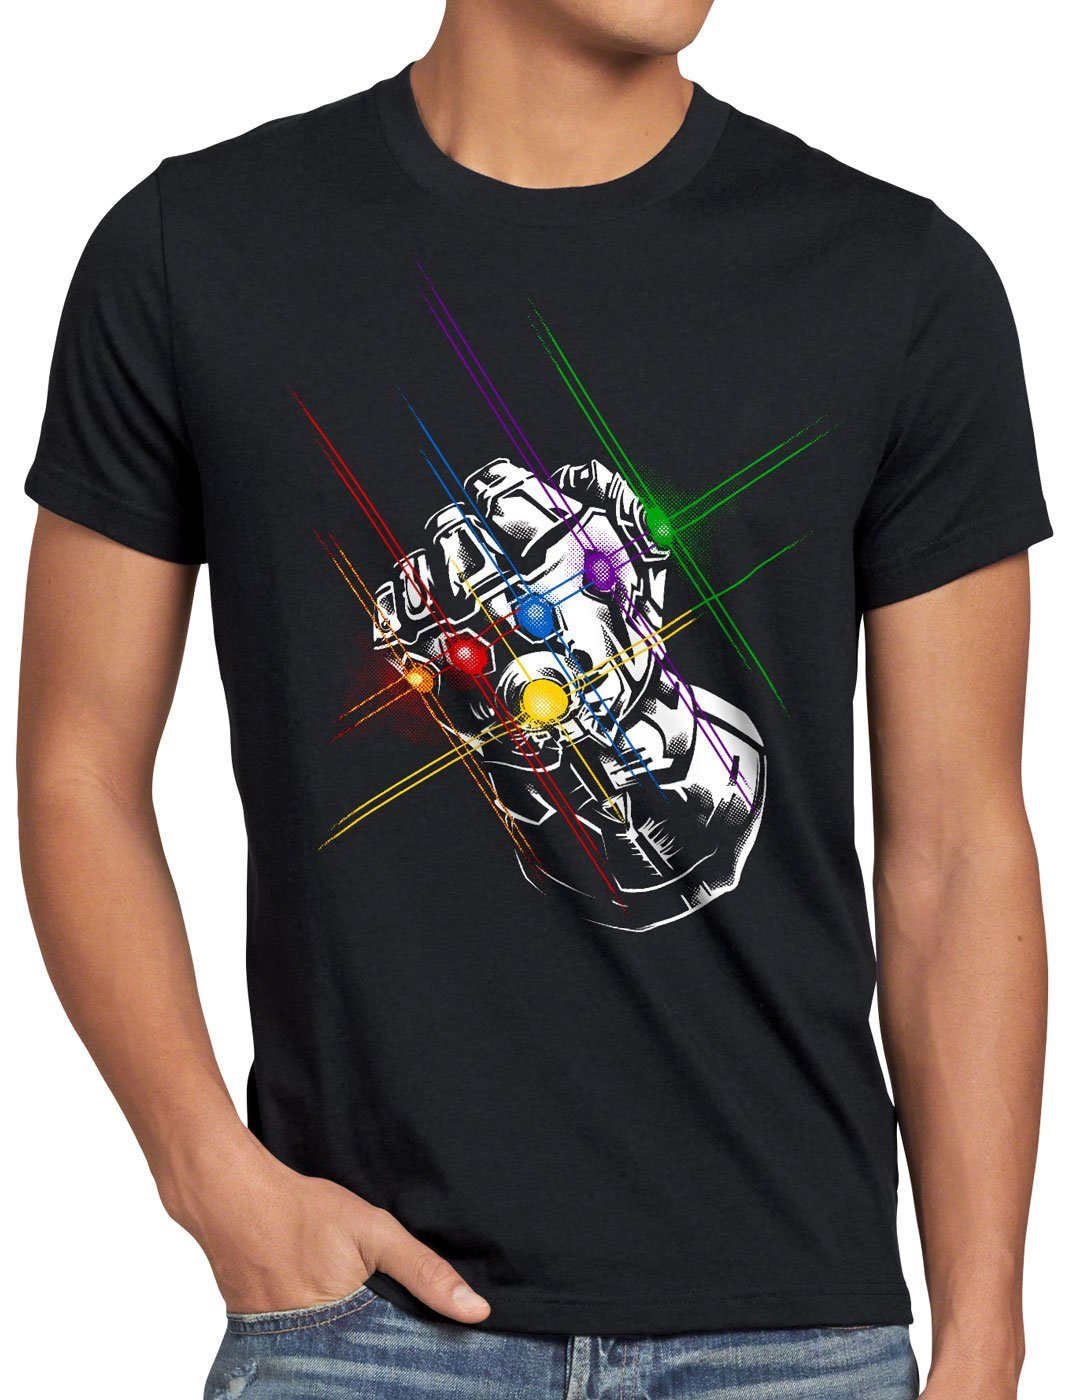 Print-Shirt Fist kino infinity Thanos Herren T-Shirt style3 superheld